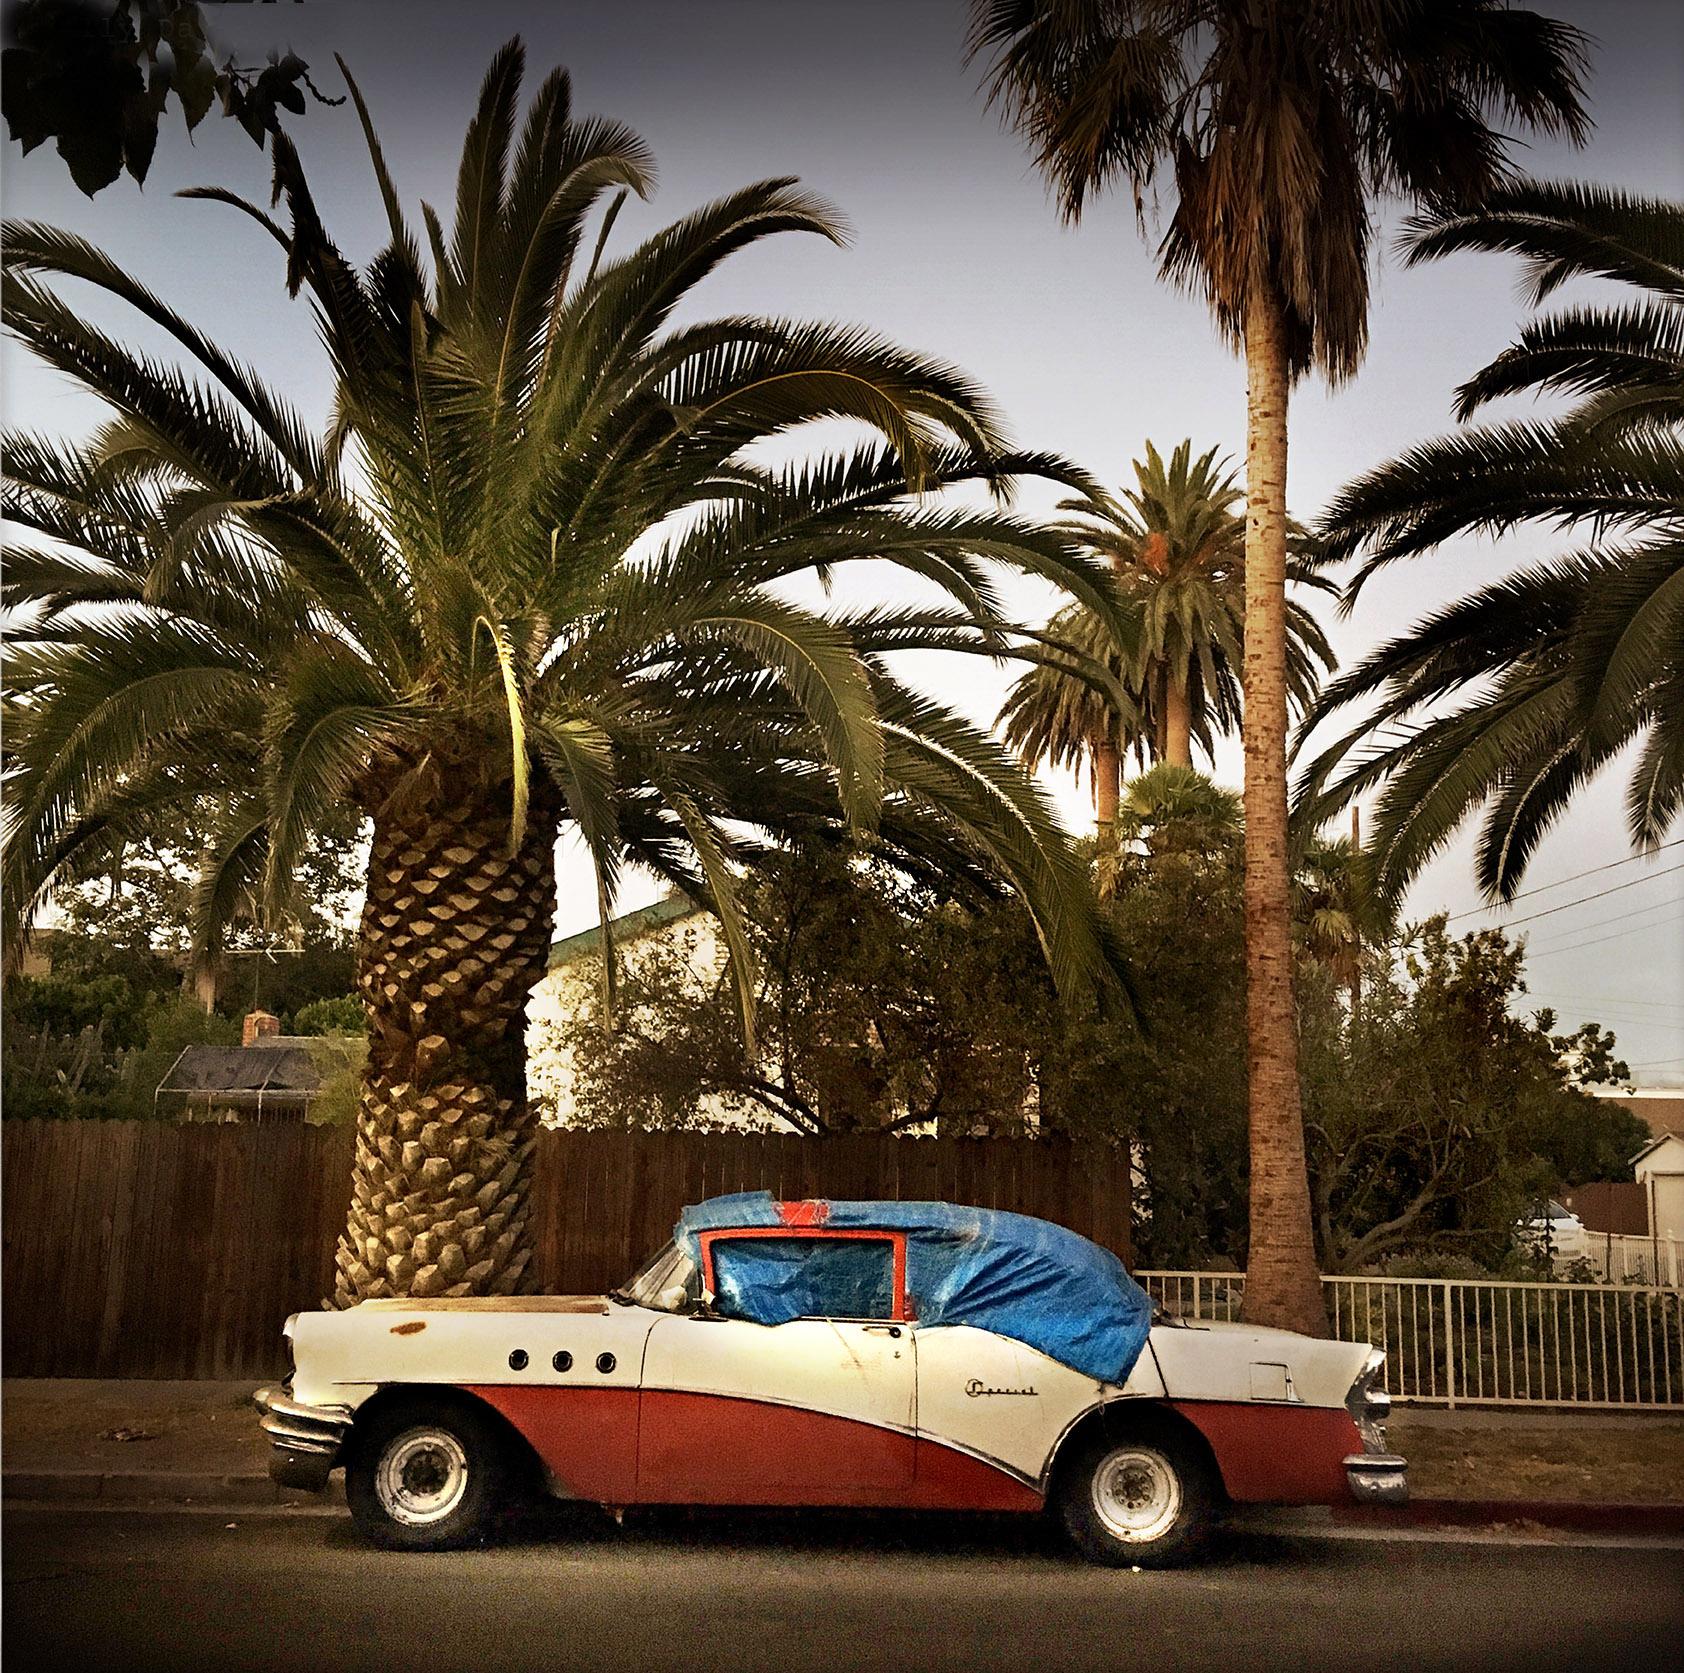 Venice Car (Los Angeles), Sally Davies